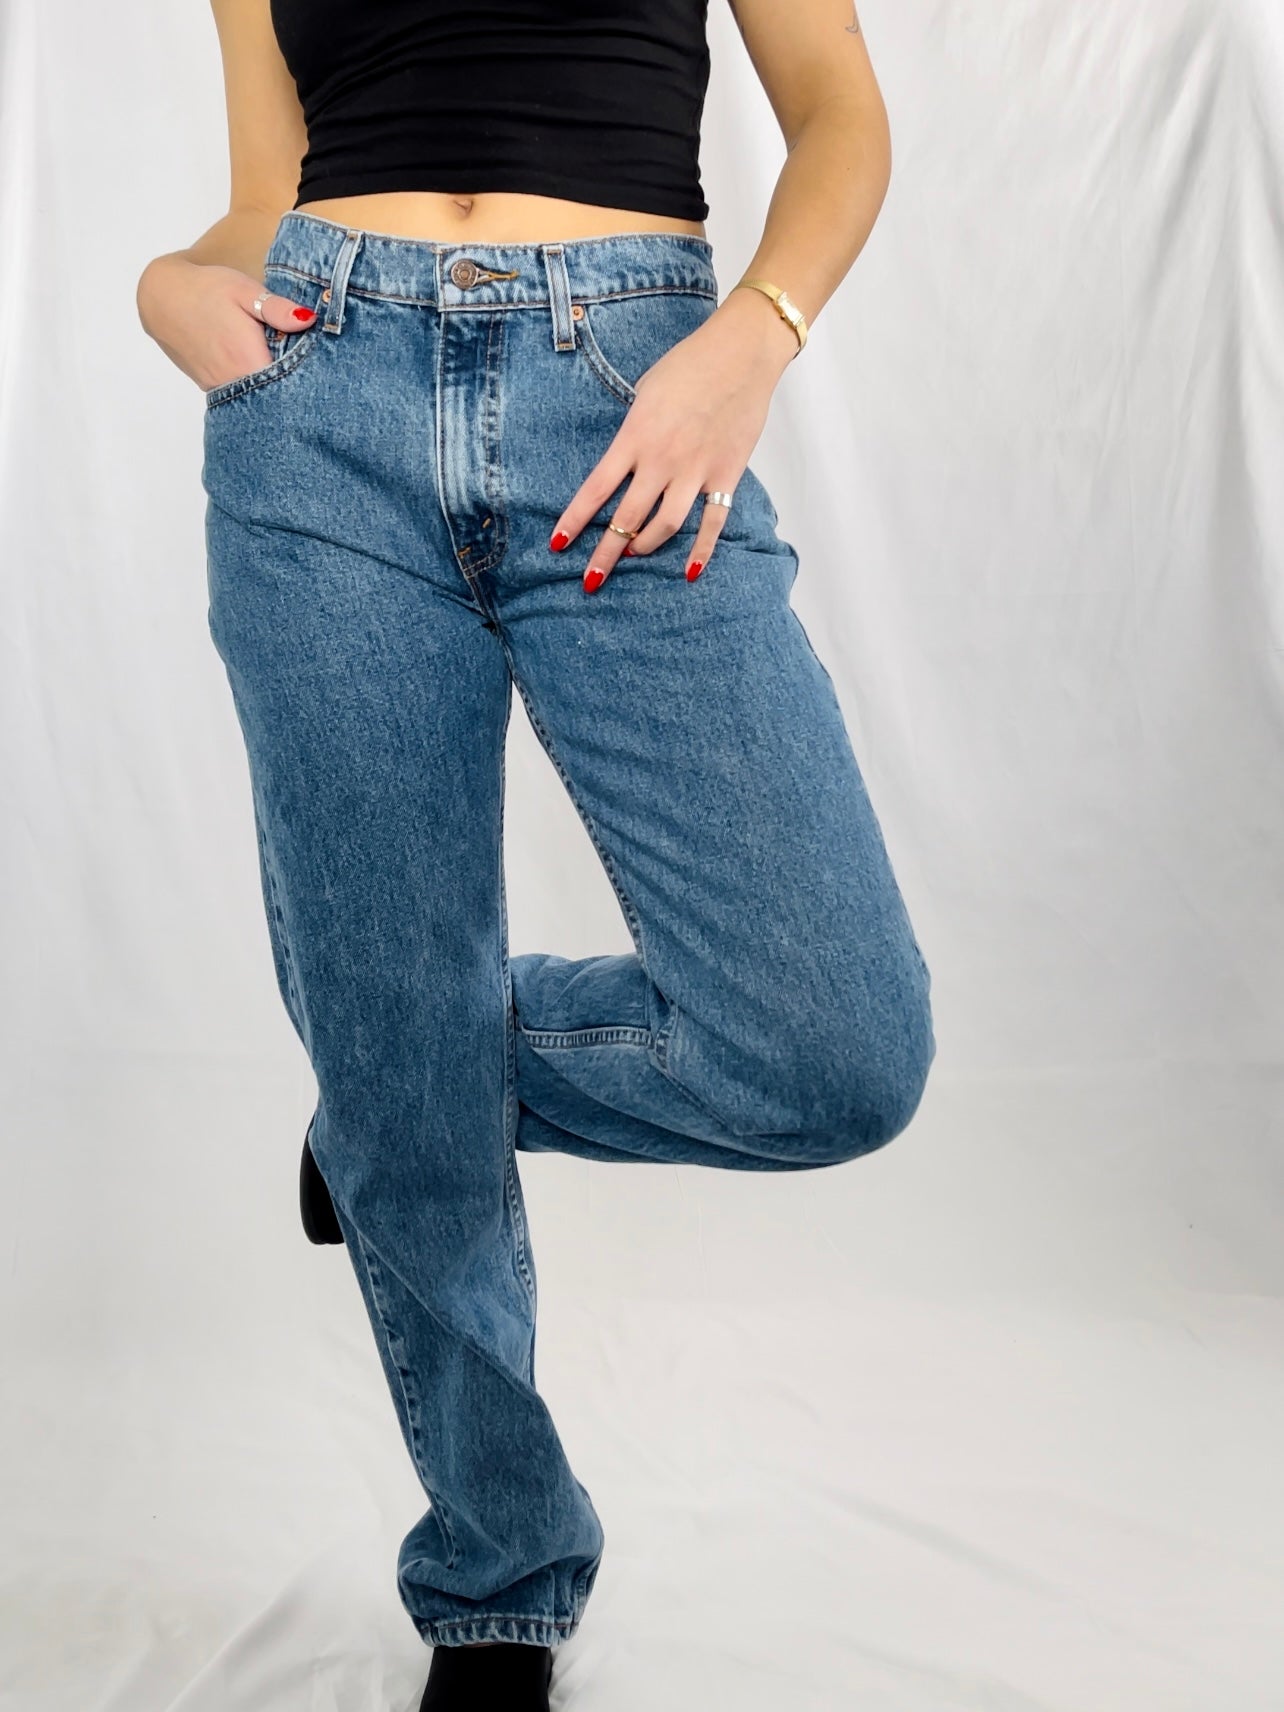 MENS 90s Levi's 505 Jeans (31x31